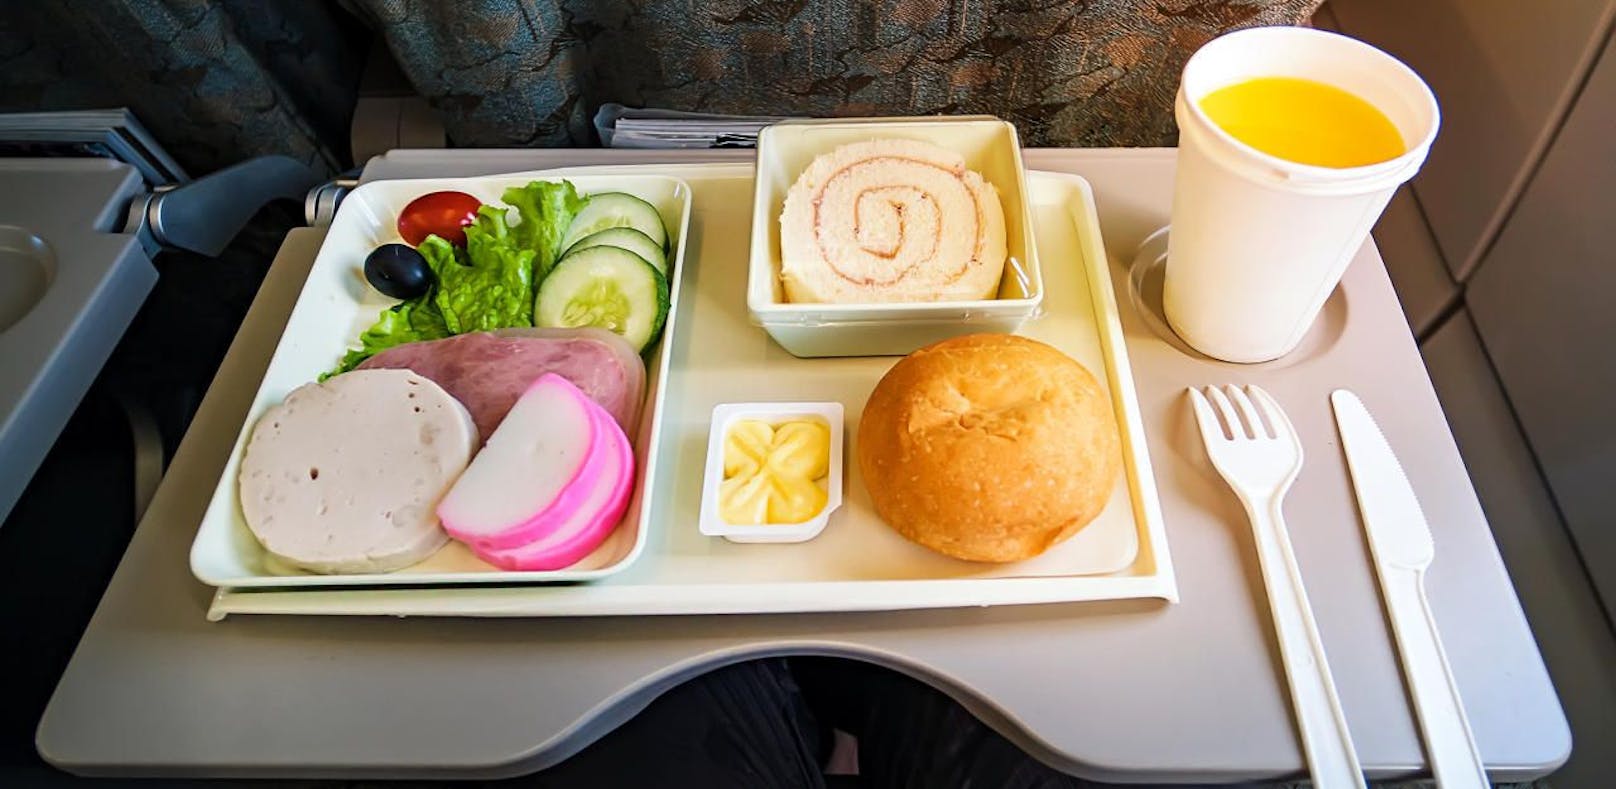 Restaurant bietet künftig Flugzeug-Essen an